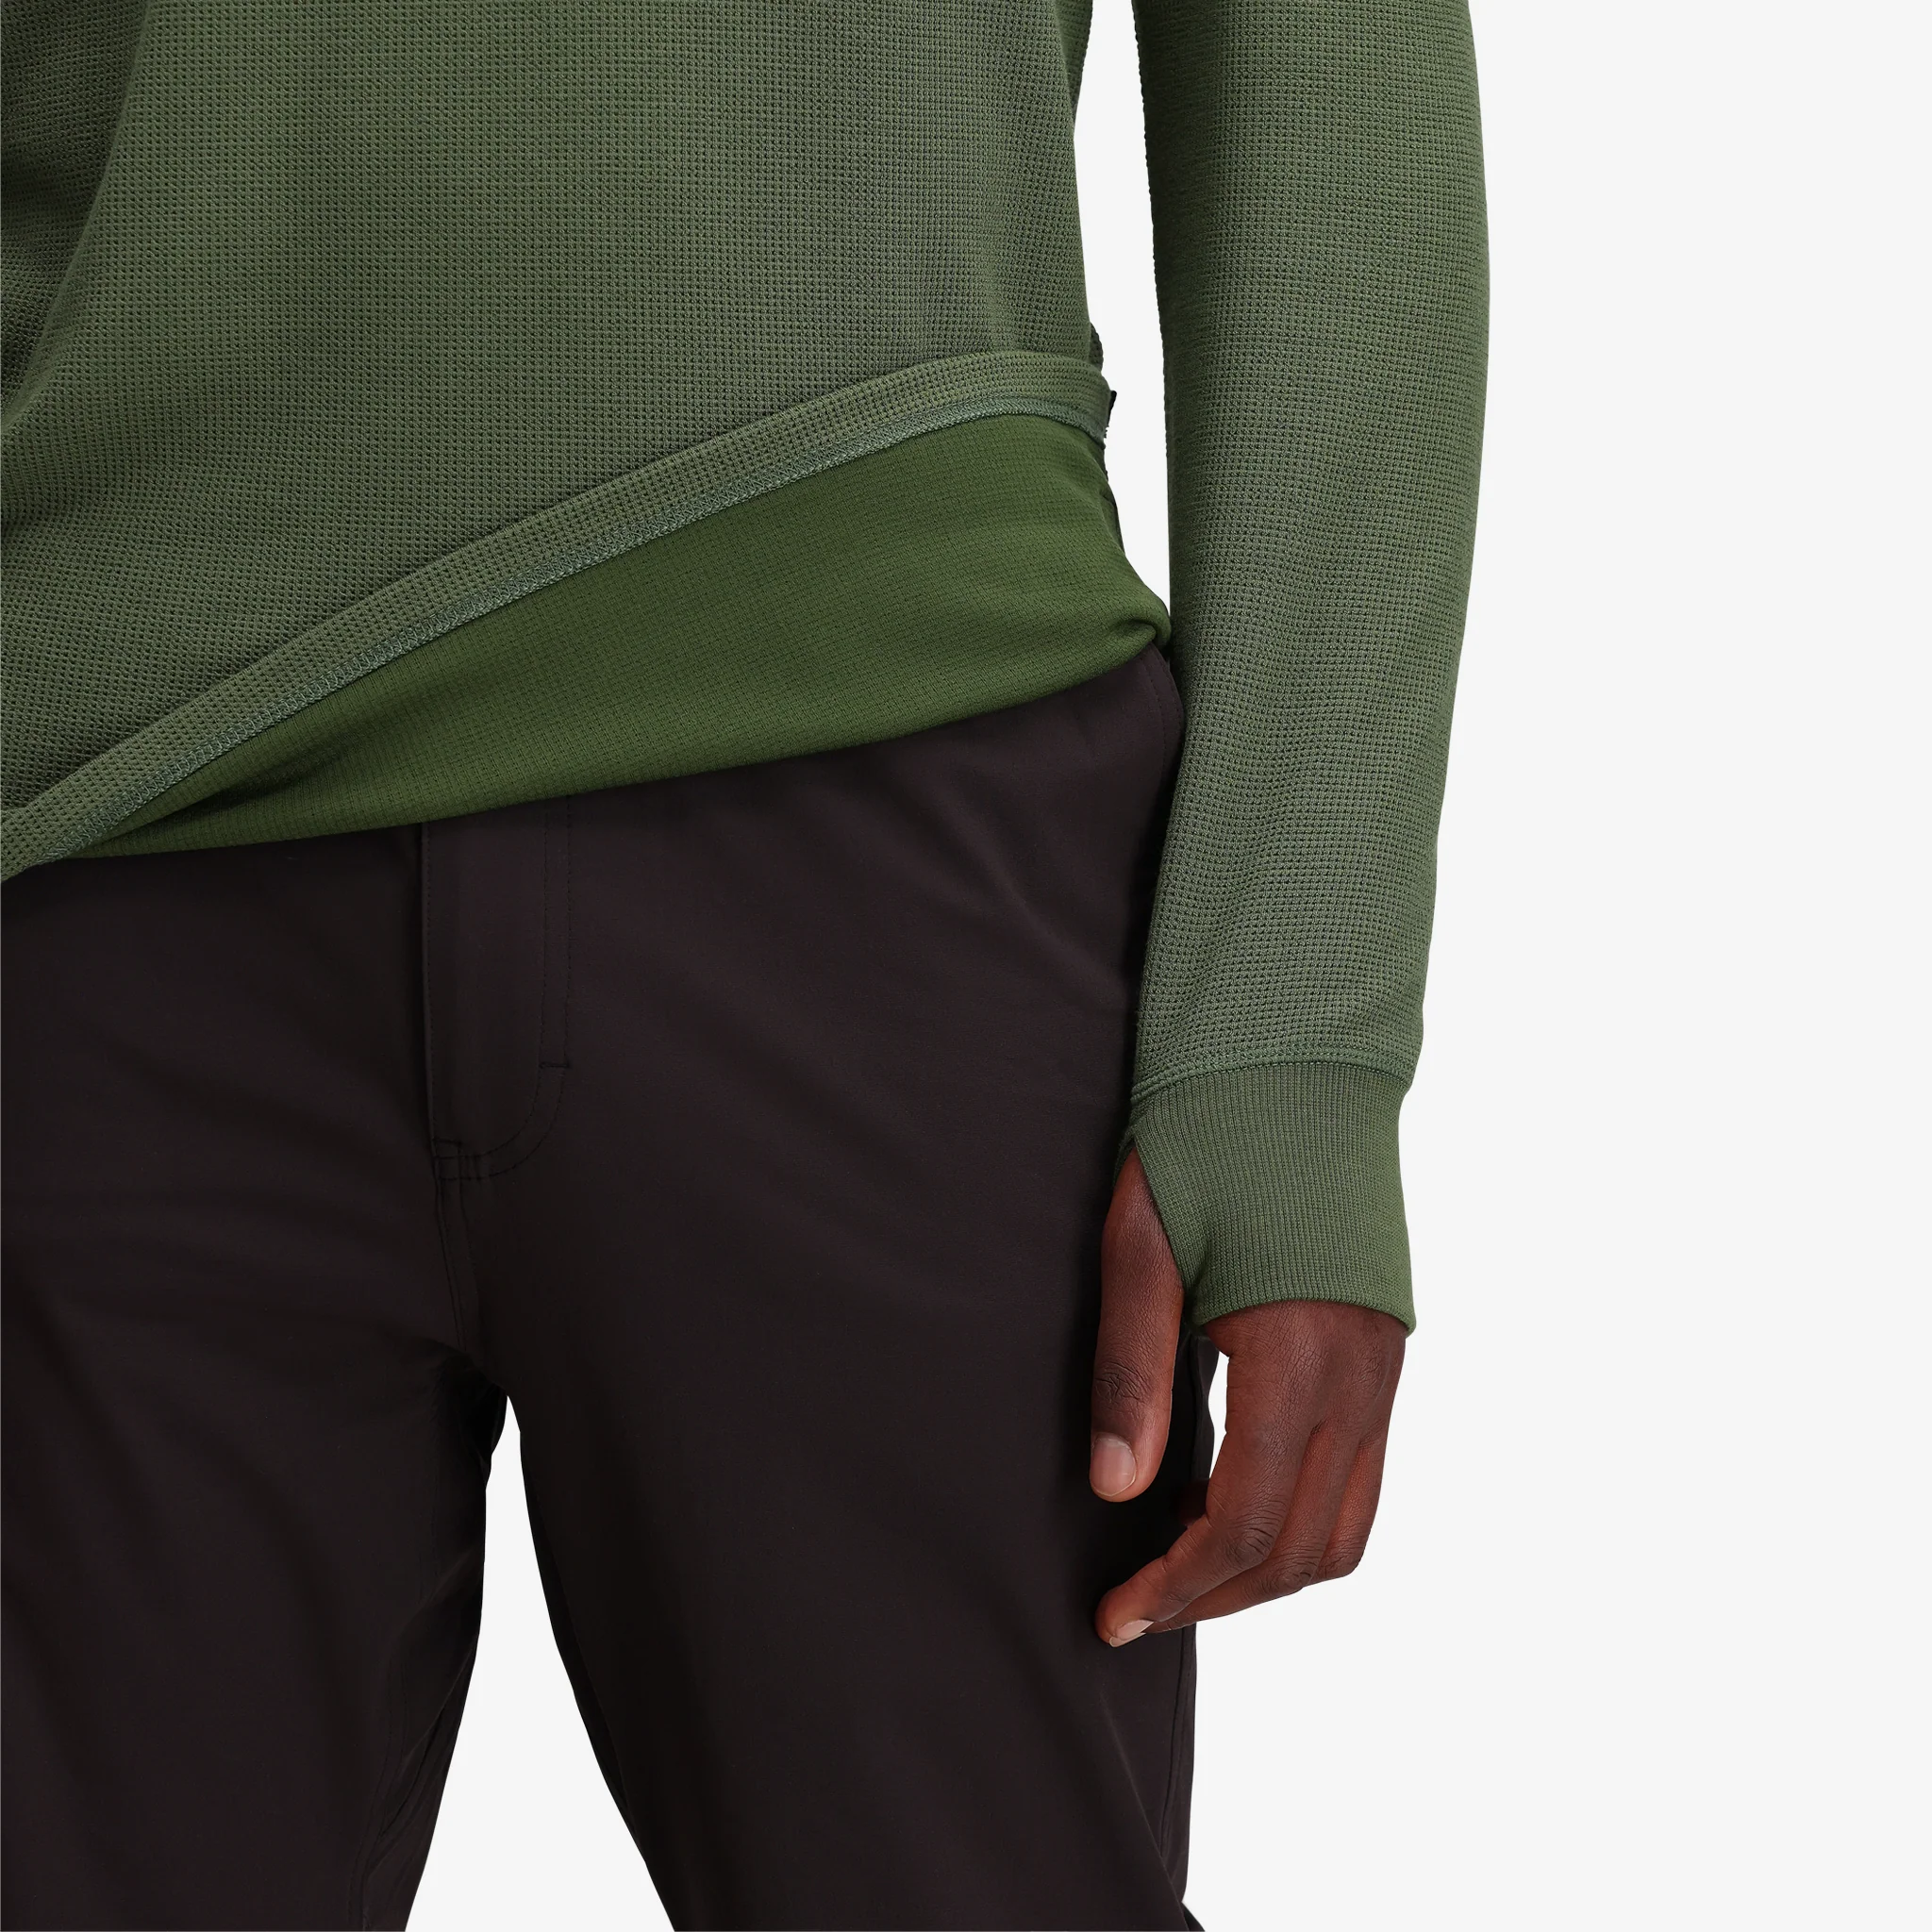 Topo Designs Canada, Mens/Apparel/Sweaters